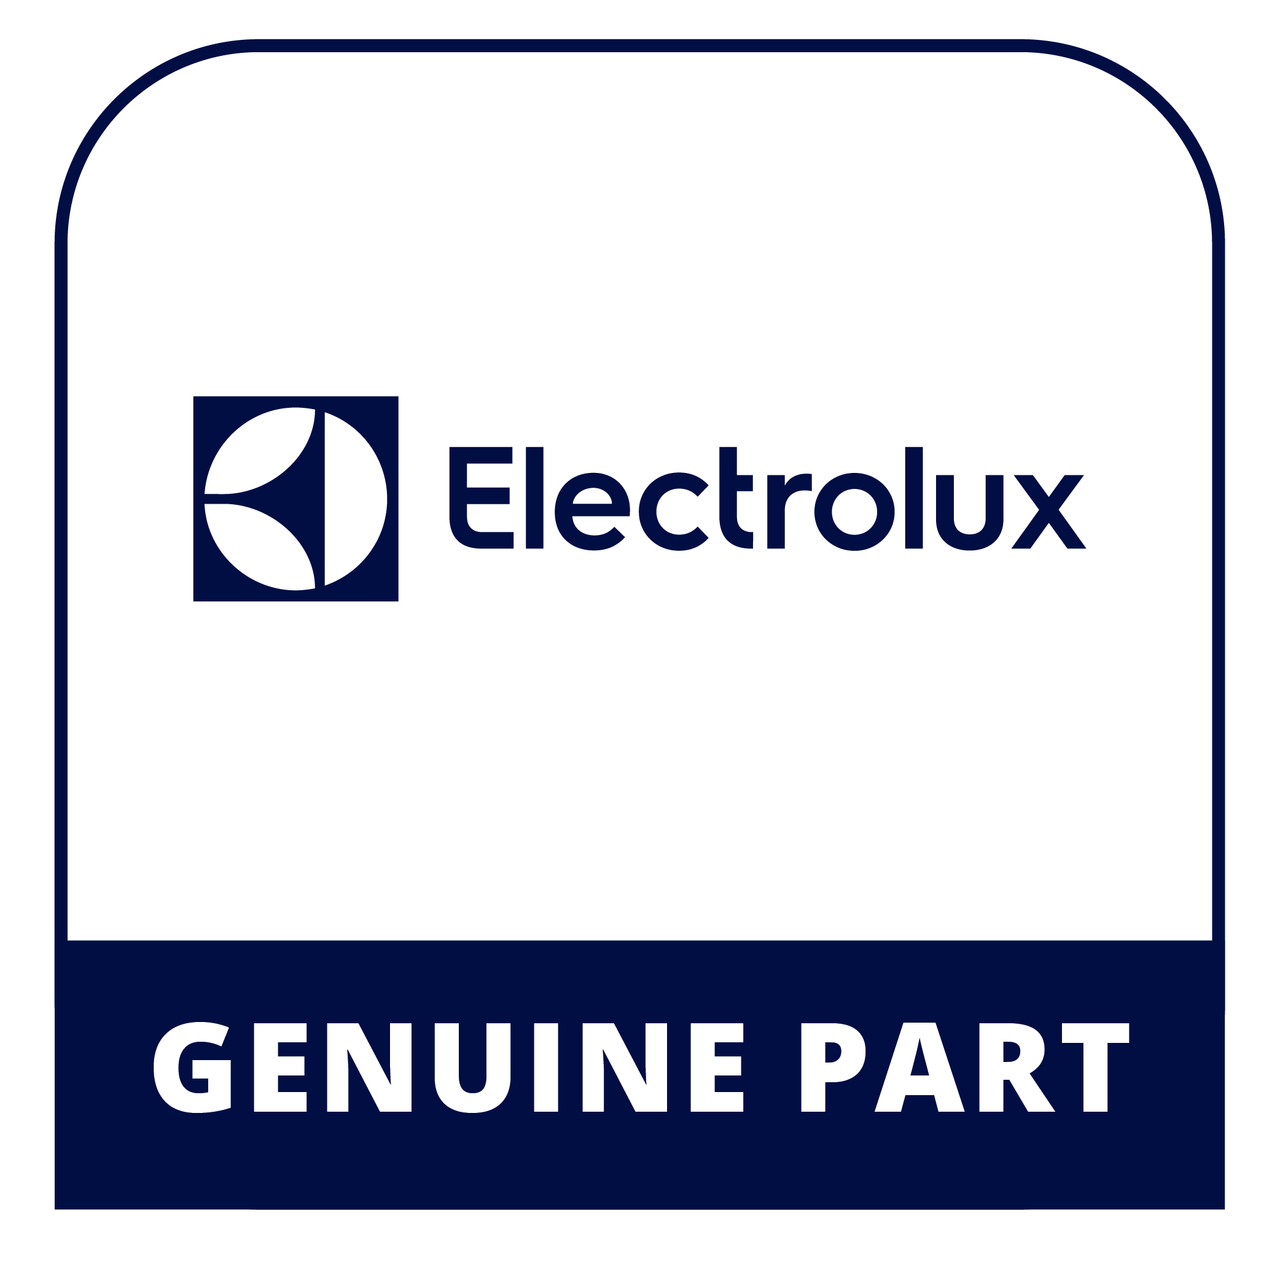 Frigidaire - Electrolux 139029202 - Cap - Genuine Electrolux Part